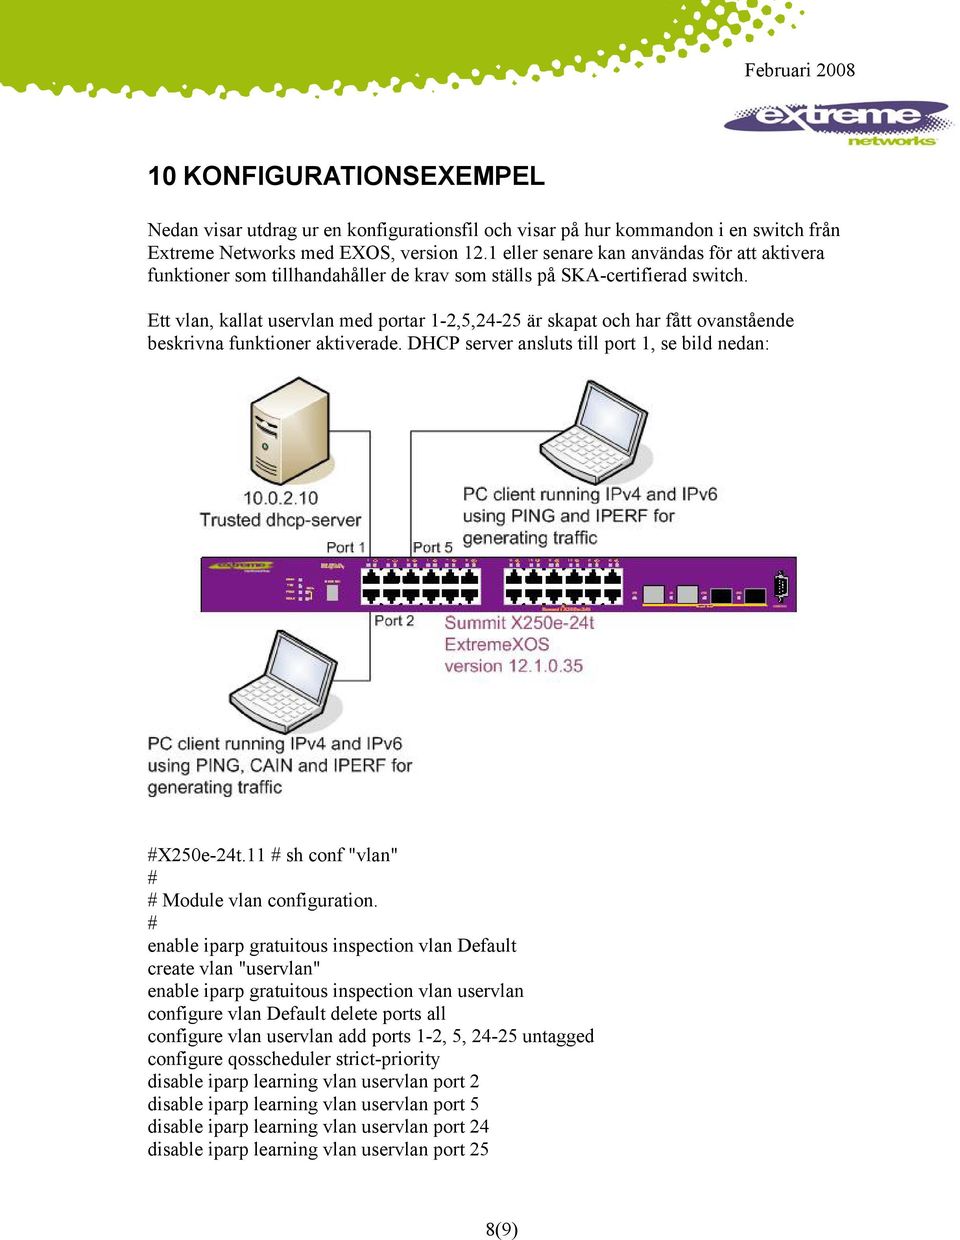 Ett vlan, kallat uservlan med portar 1-2,5,24-25 är skapat och har fått ovanstående beskrivna funktioner aktiverade. DHCP server ansluts till port 1, se bild nedan: X250e-24t.